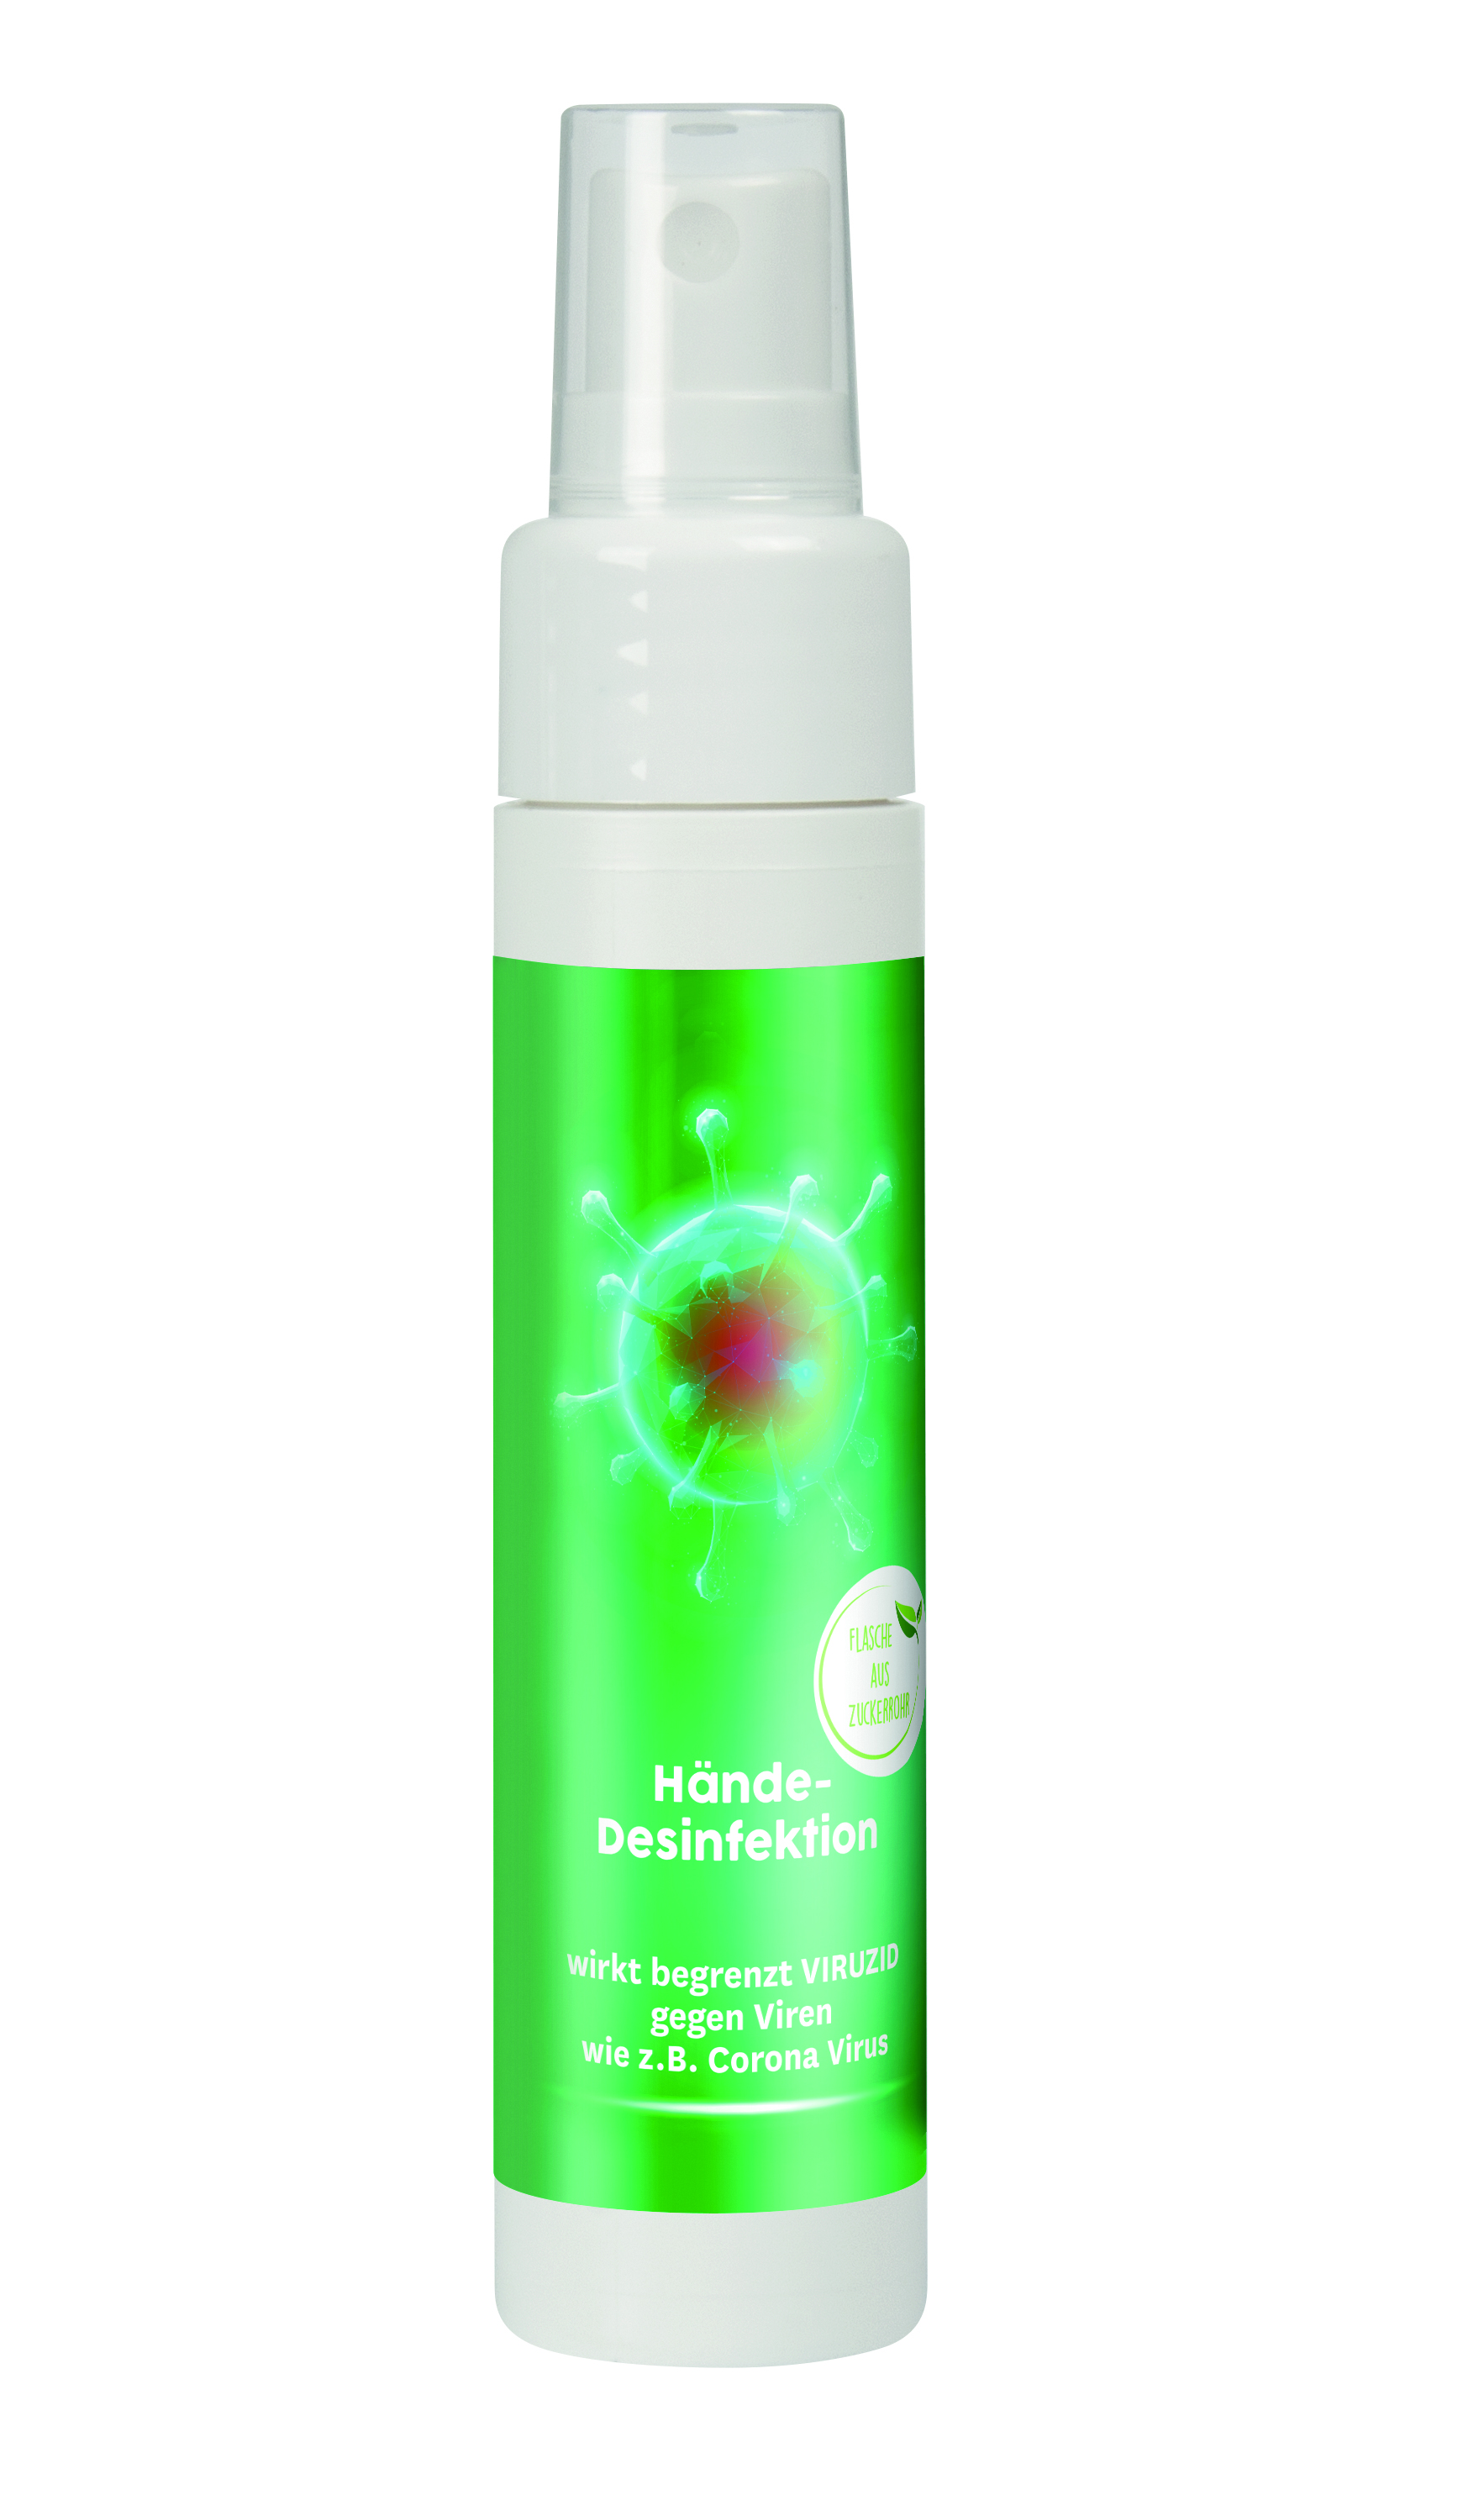 50 ml Sprayflasche "Slim" mit Handpflege 93 % Aloe Vera